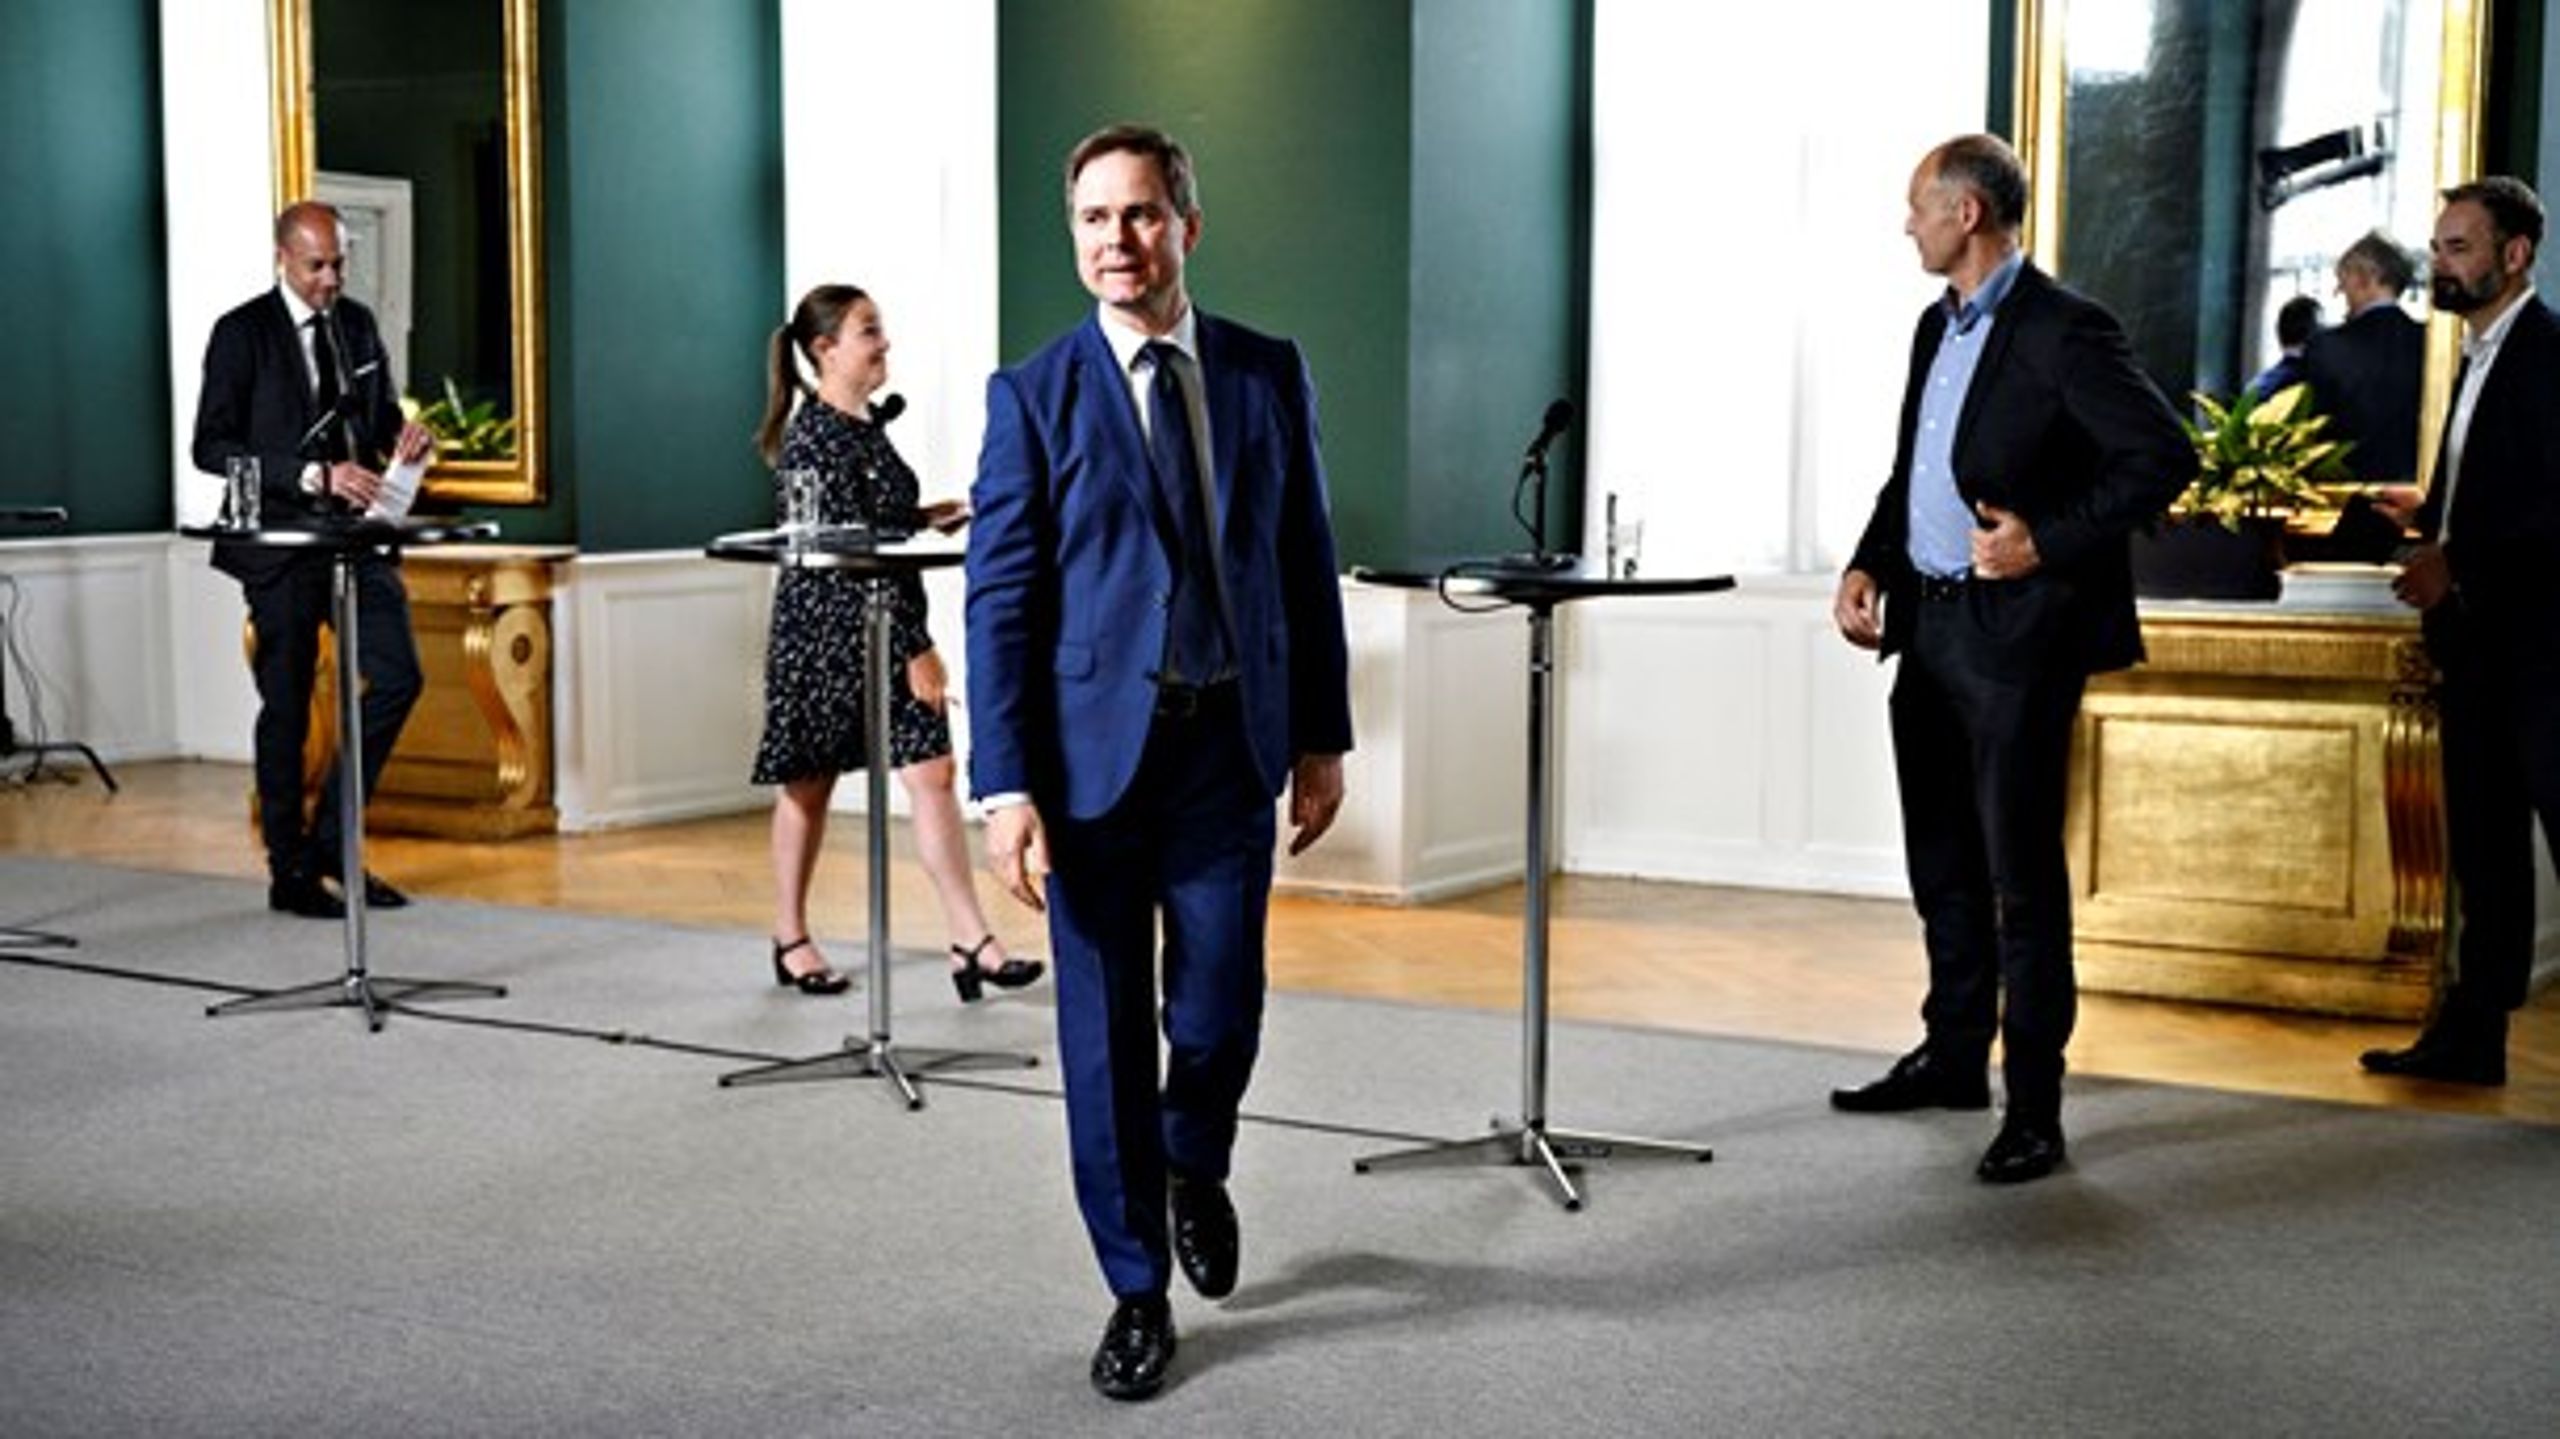 Finansminister Nicolai Wammen (S) vil arbejde videre med at indføre flere besparelser på konsulenter i det offentlige.